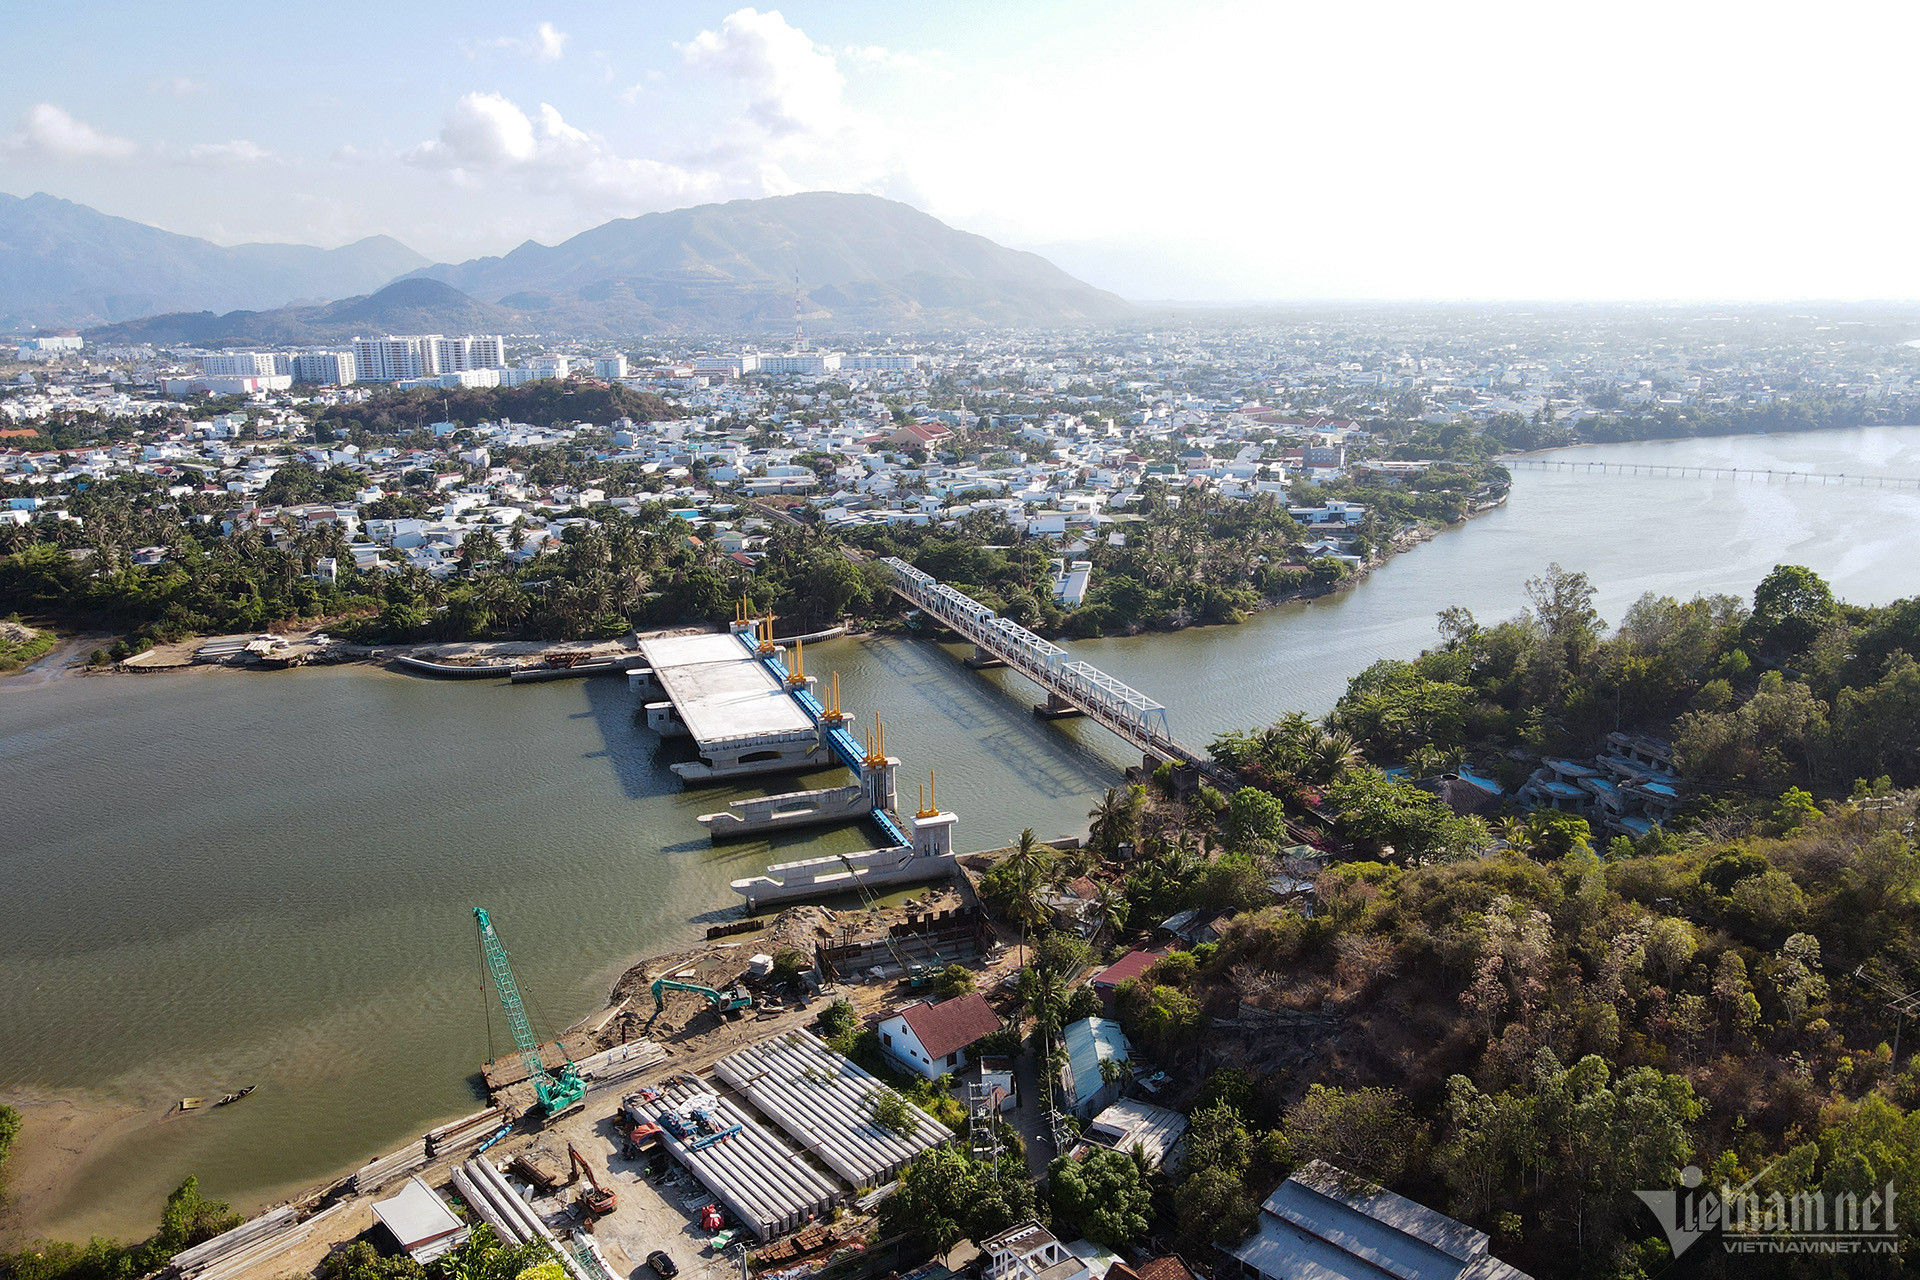 Nha Trang environmental projects face sluggish pace